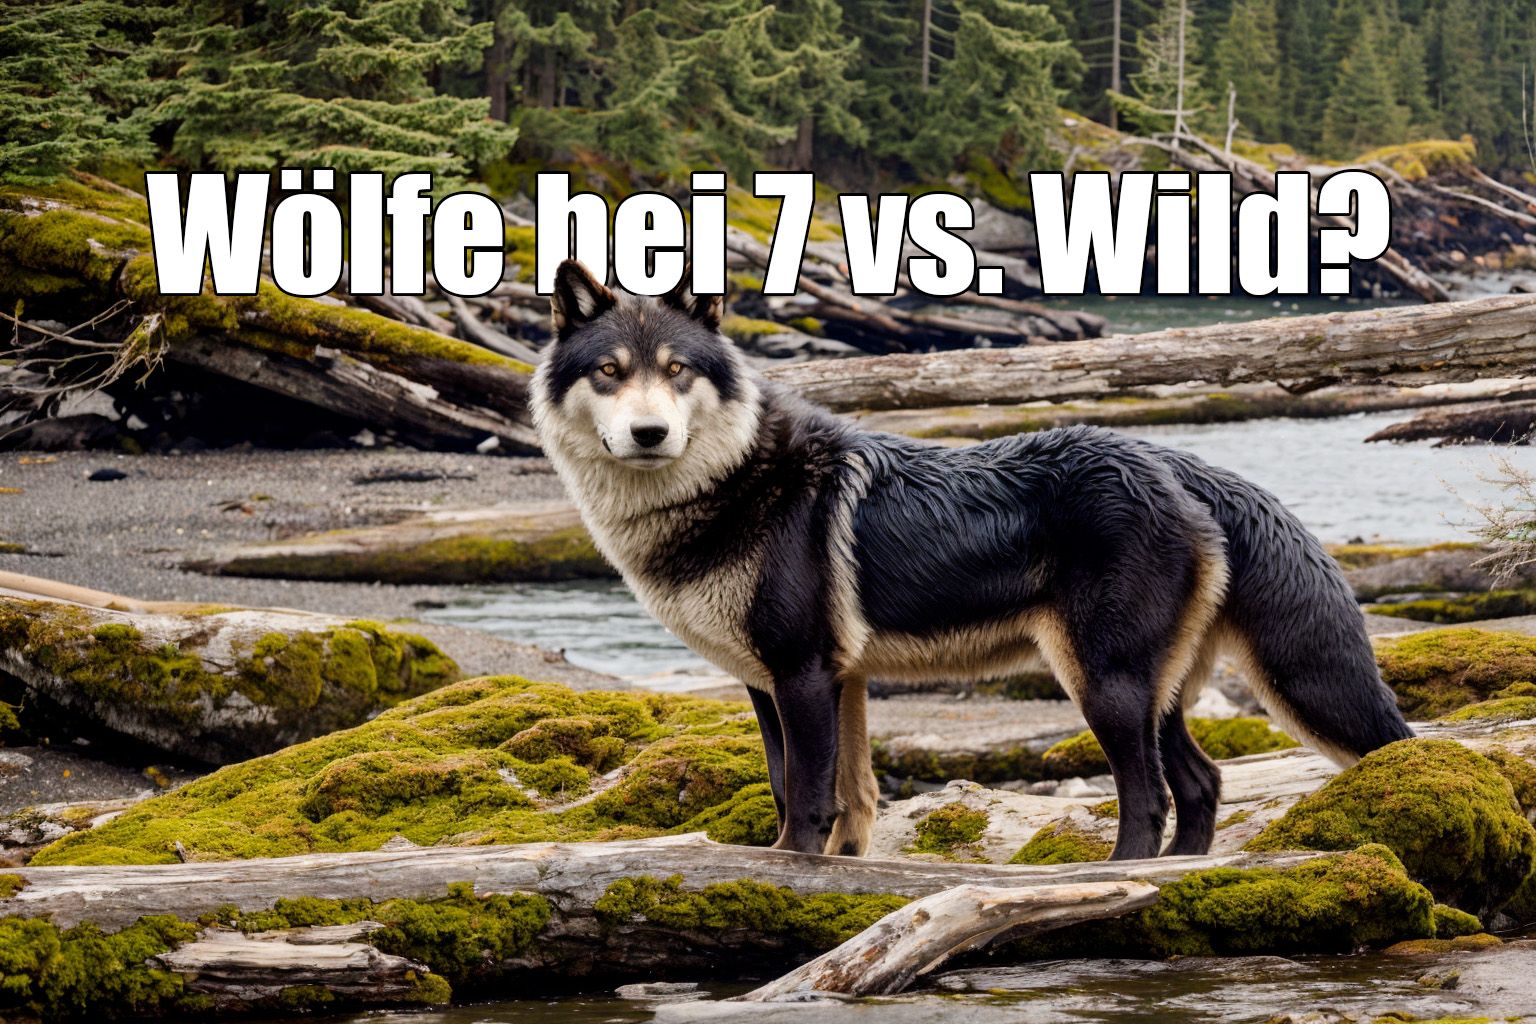 Heulen in der Nacht: Erste Beweise für Wölfe auf der 7 vs. Wild Insel